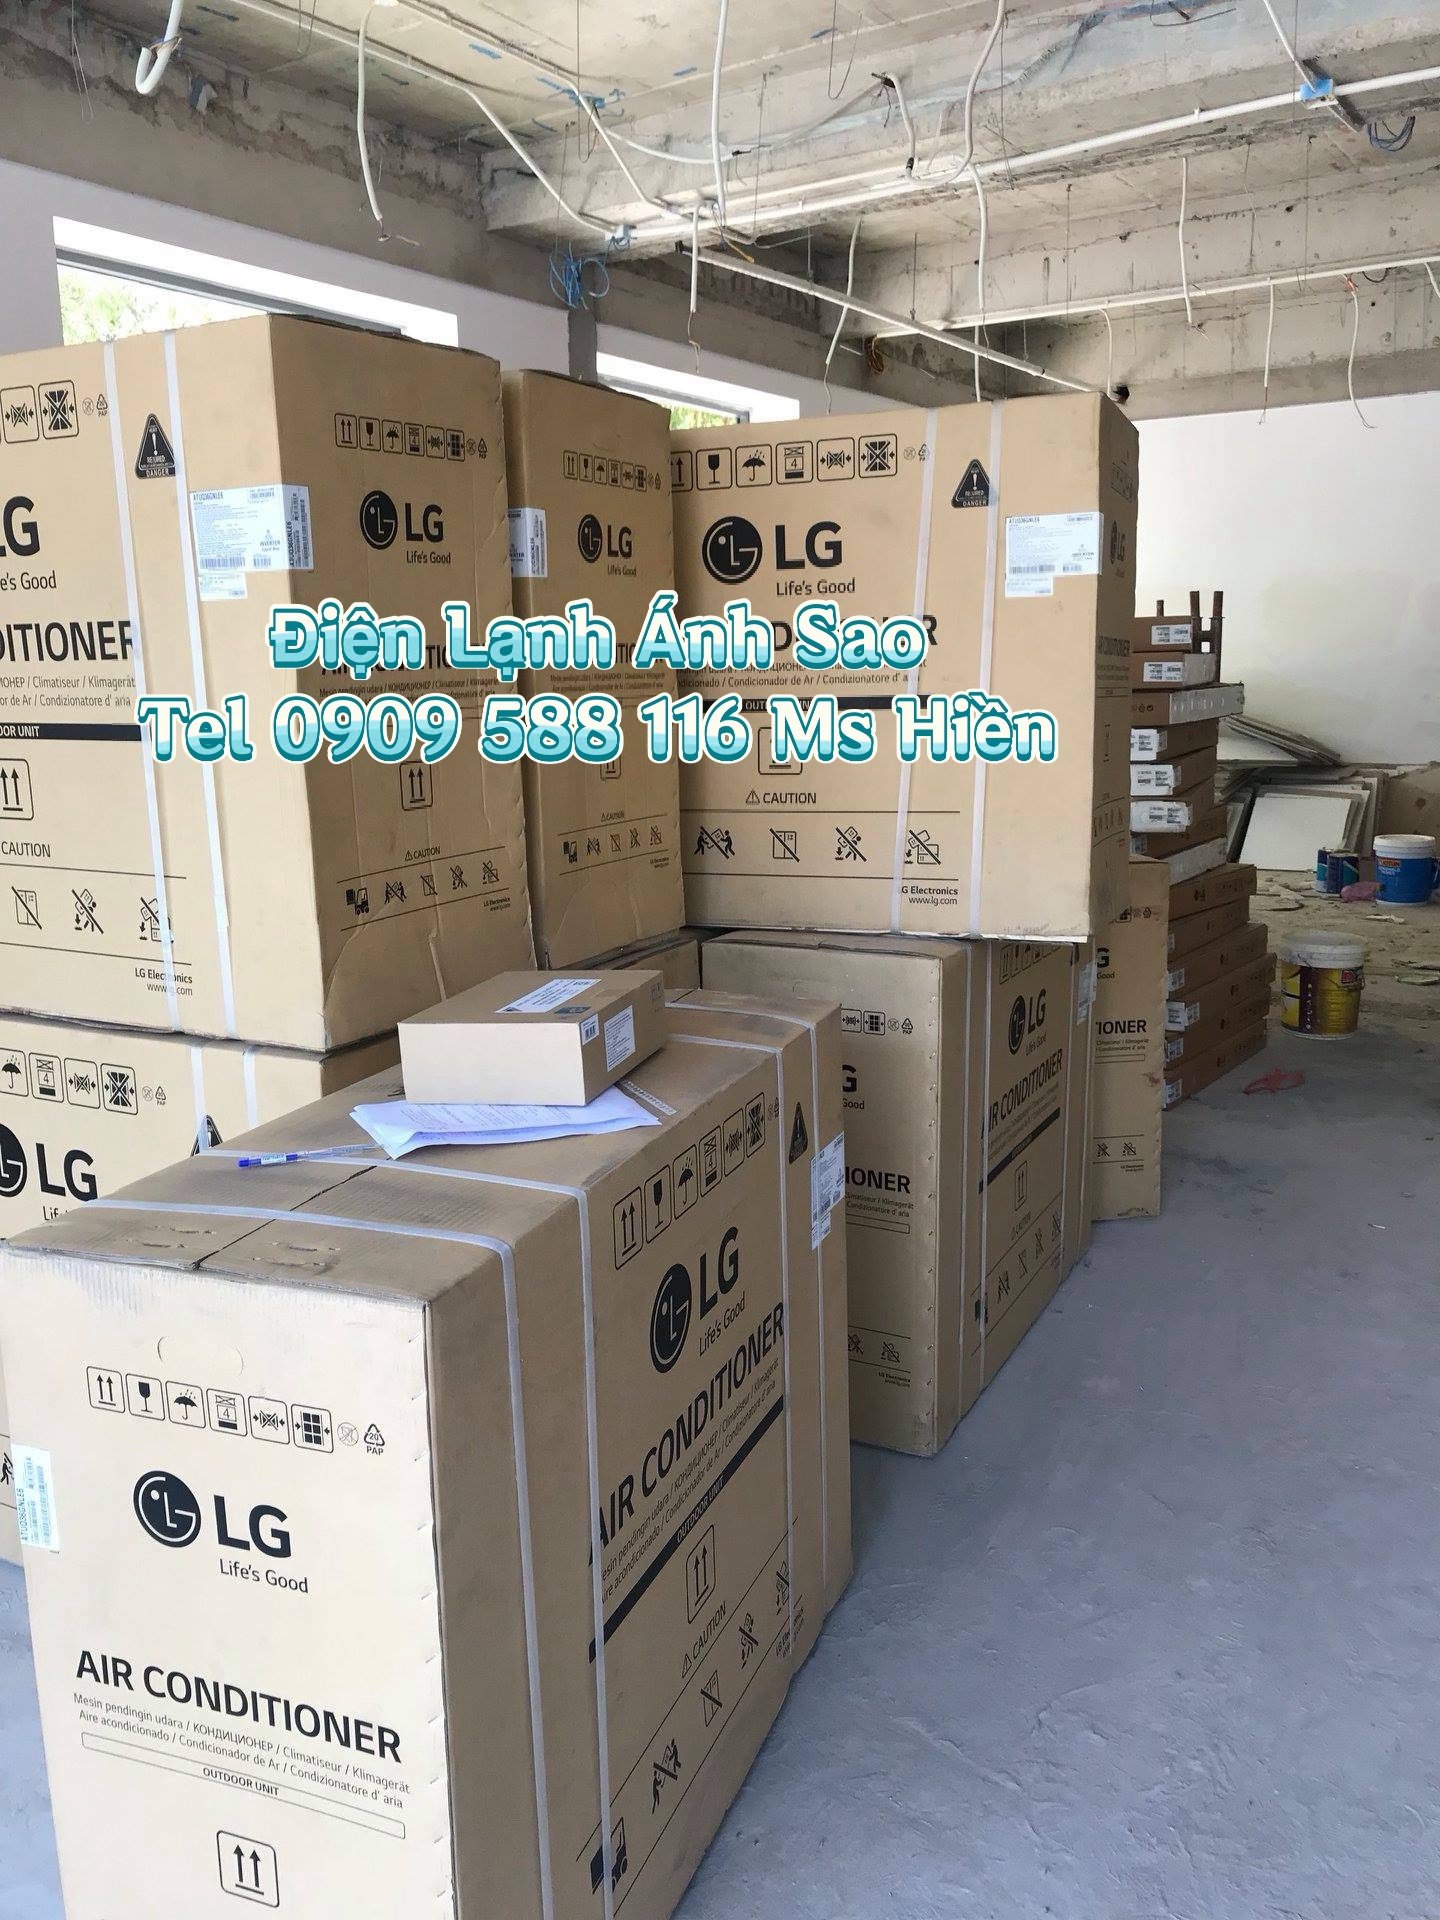 Đơn vị nào bán máy lạnh LG giá tốt tại HCM